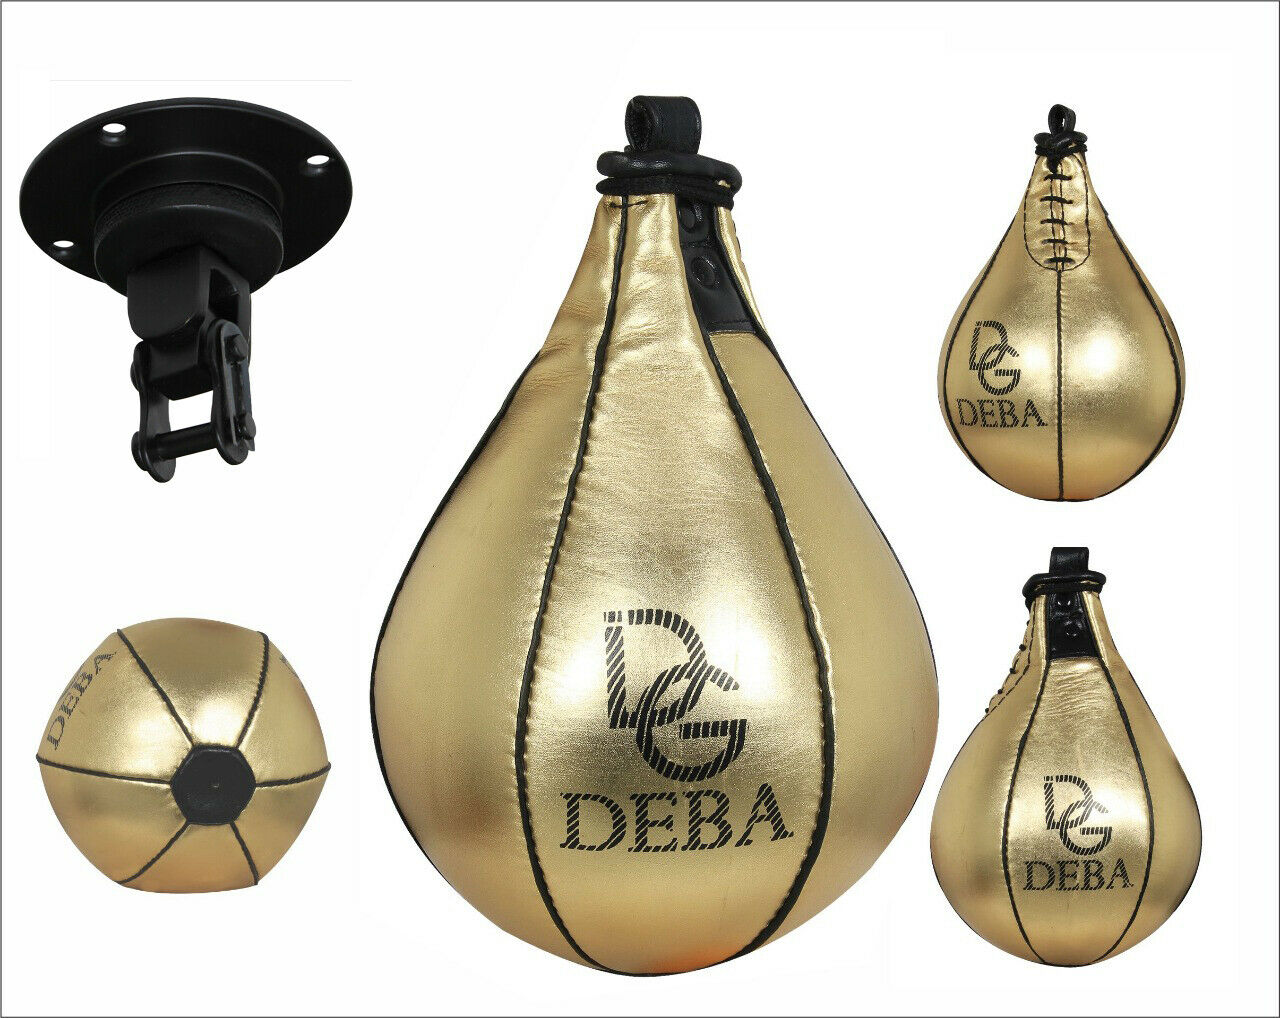 Deba Mexican Art Doppelendball Leder Speedball Boxbirne Boxsack DE 